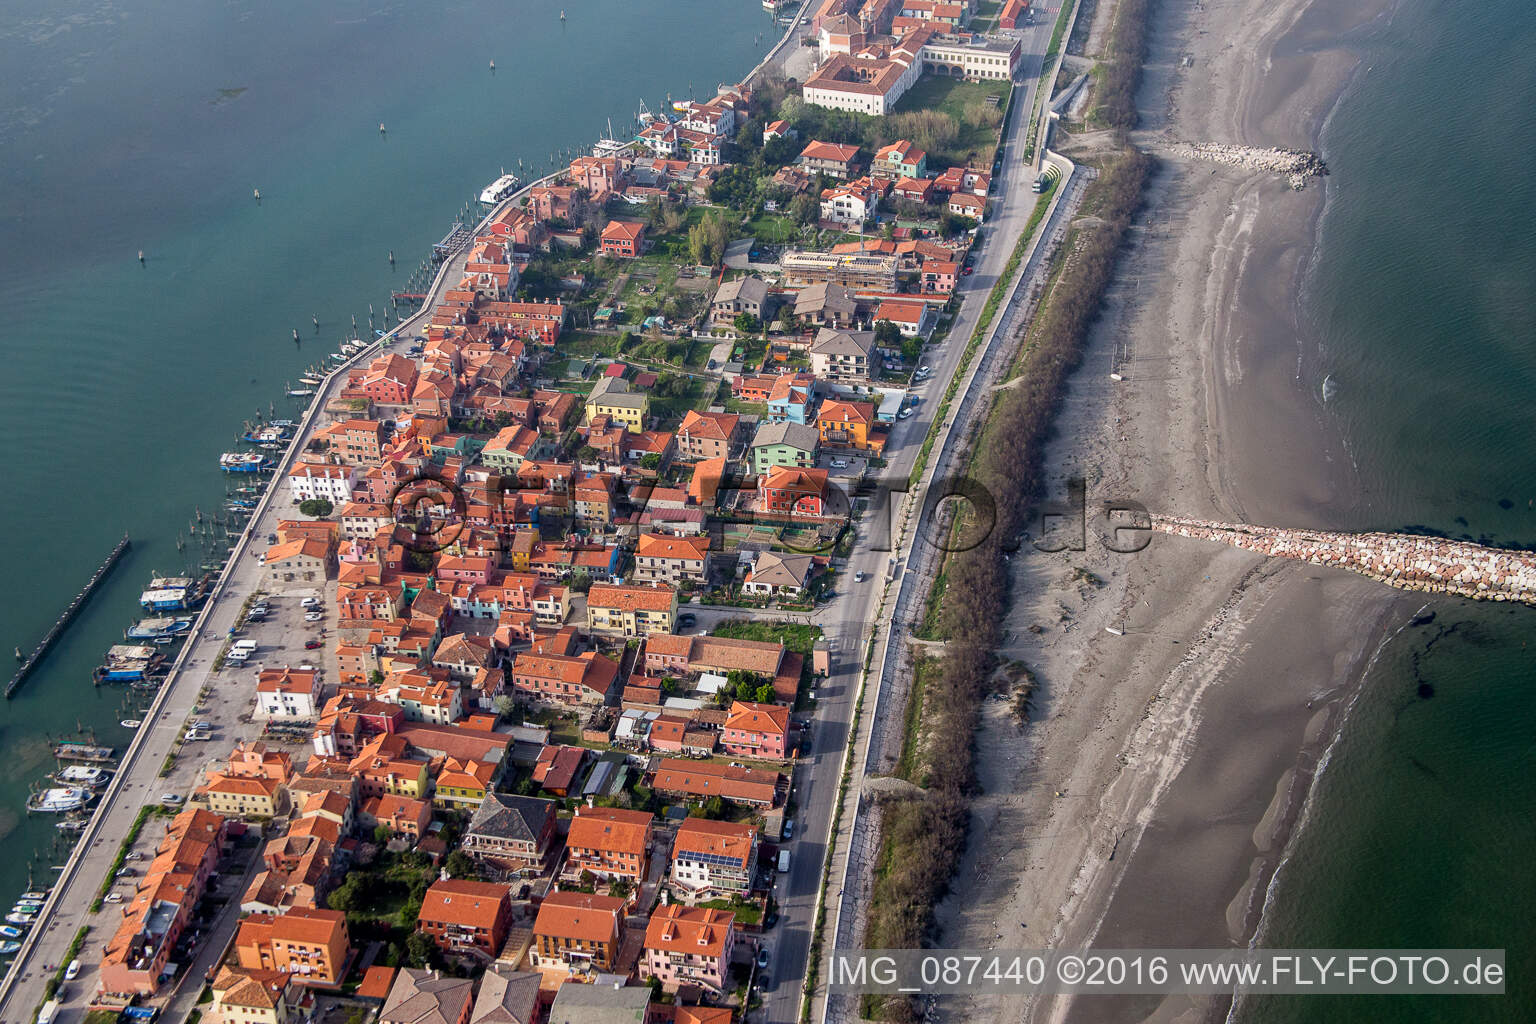 Bird's eye view of Settlement area in the district Pellestrina in Venedig in Venetien, Italy